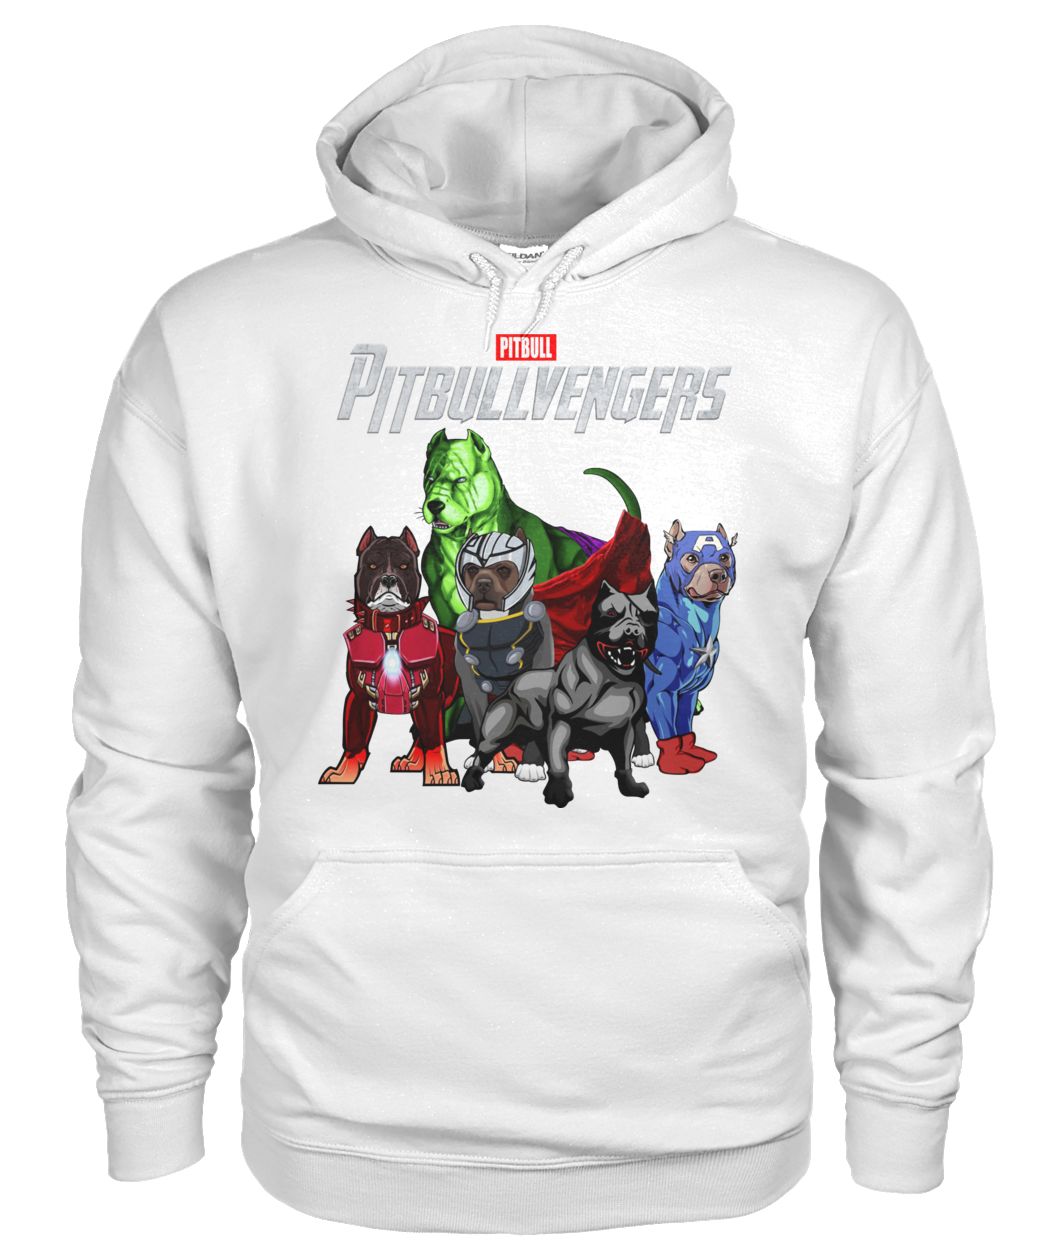 Marvel avengers endgame pitbullvengers pitbull gildan hoodie